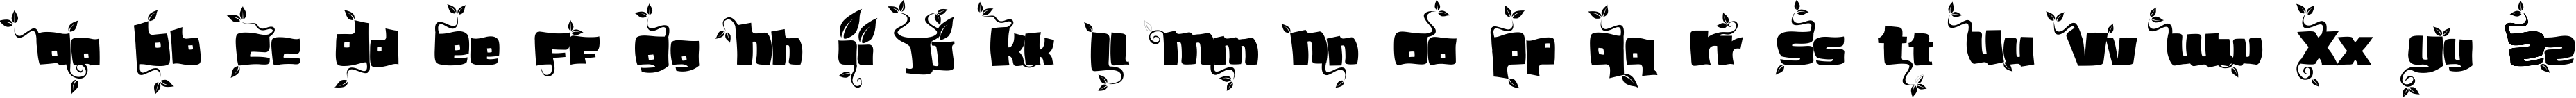 Пример написания английского алфавита шрифтом SoupLeaf